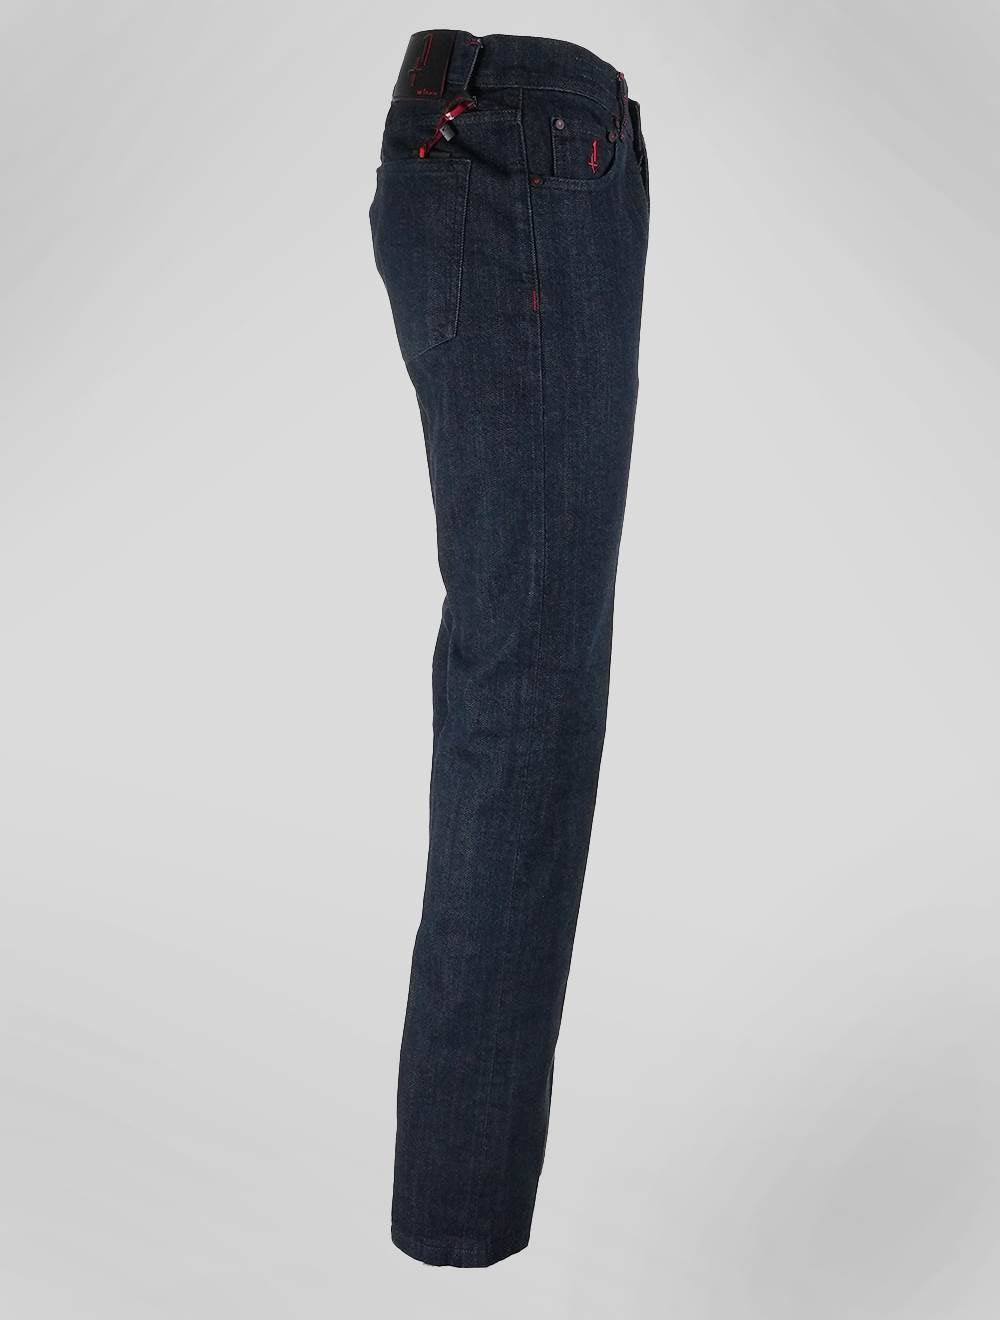 קיטון כחול כהה, ג 'ינס, מהדורה מיוחדת